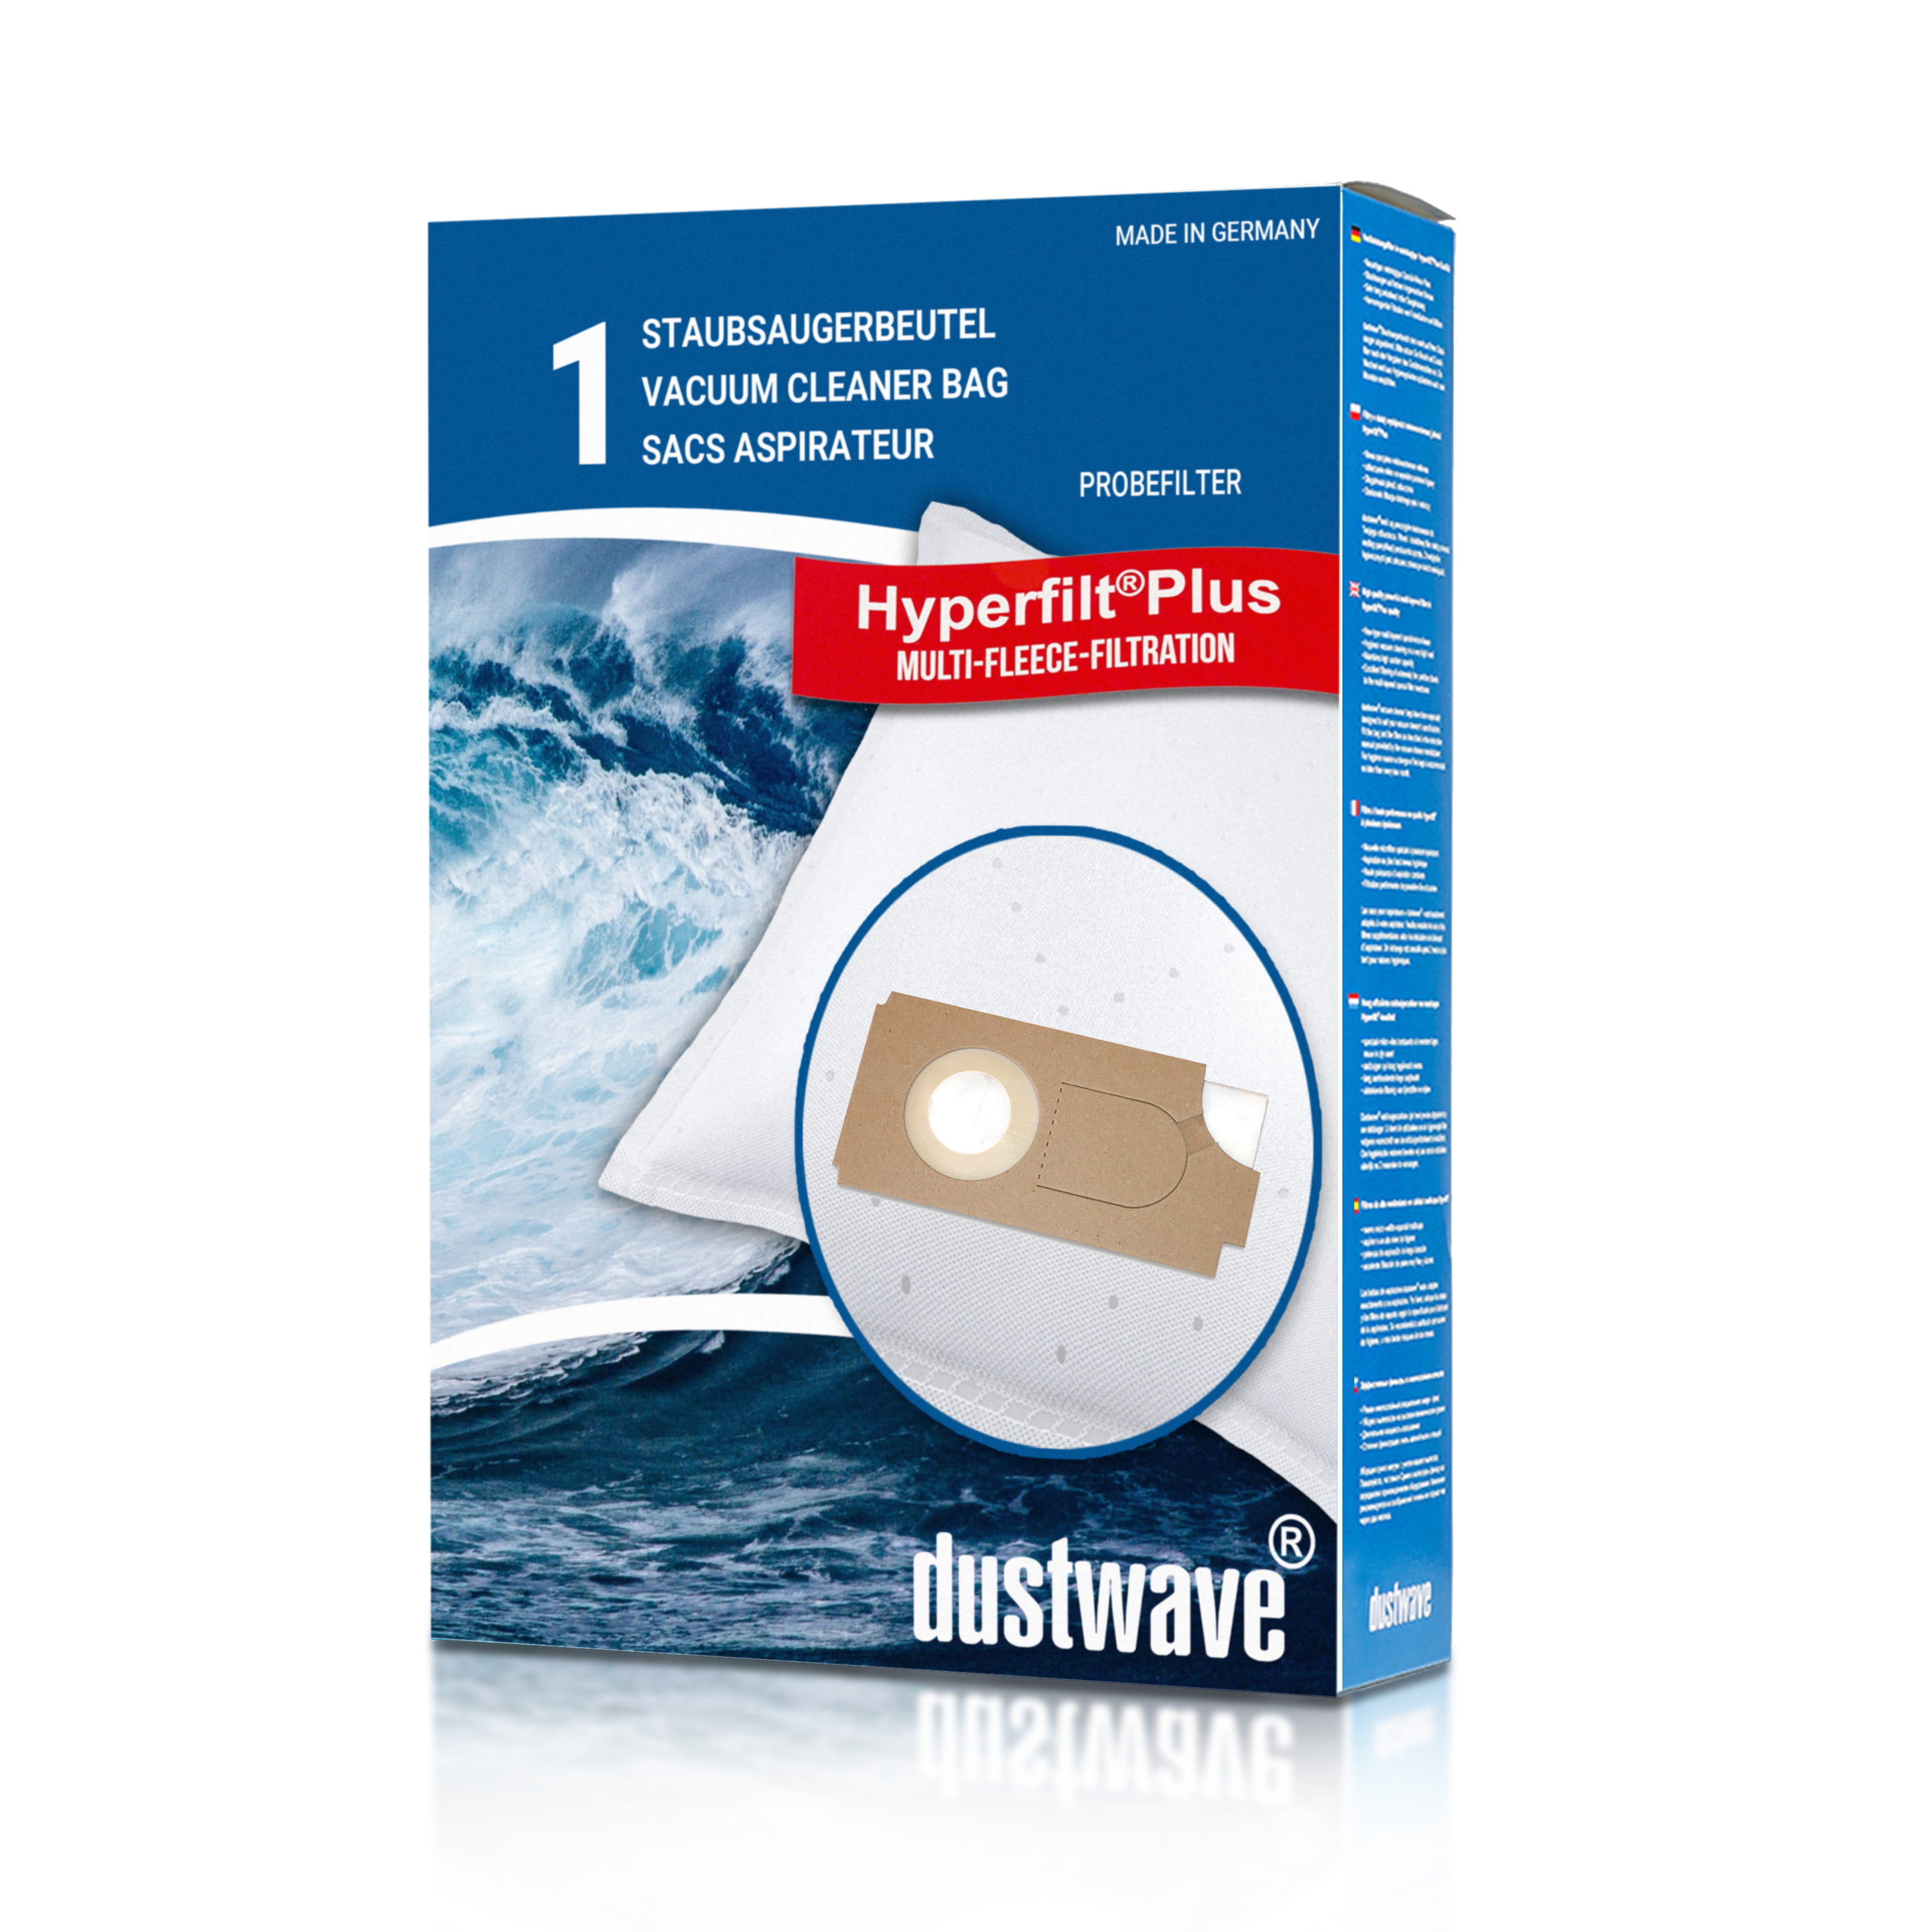 Dustwave® 1 Staubsaugerbeutel für Columbus BS 350 / BS350 - hocheffizient mit Hygieneverschluss - Made in Germany